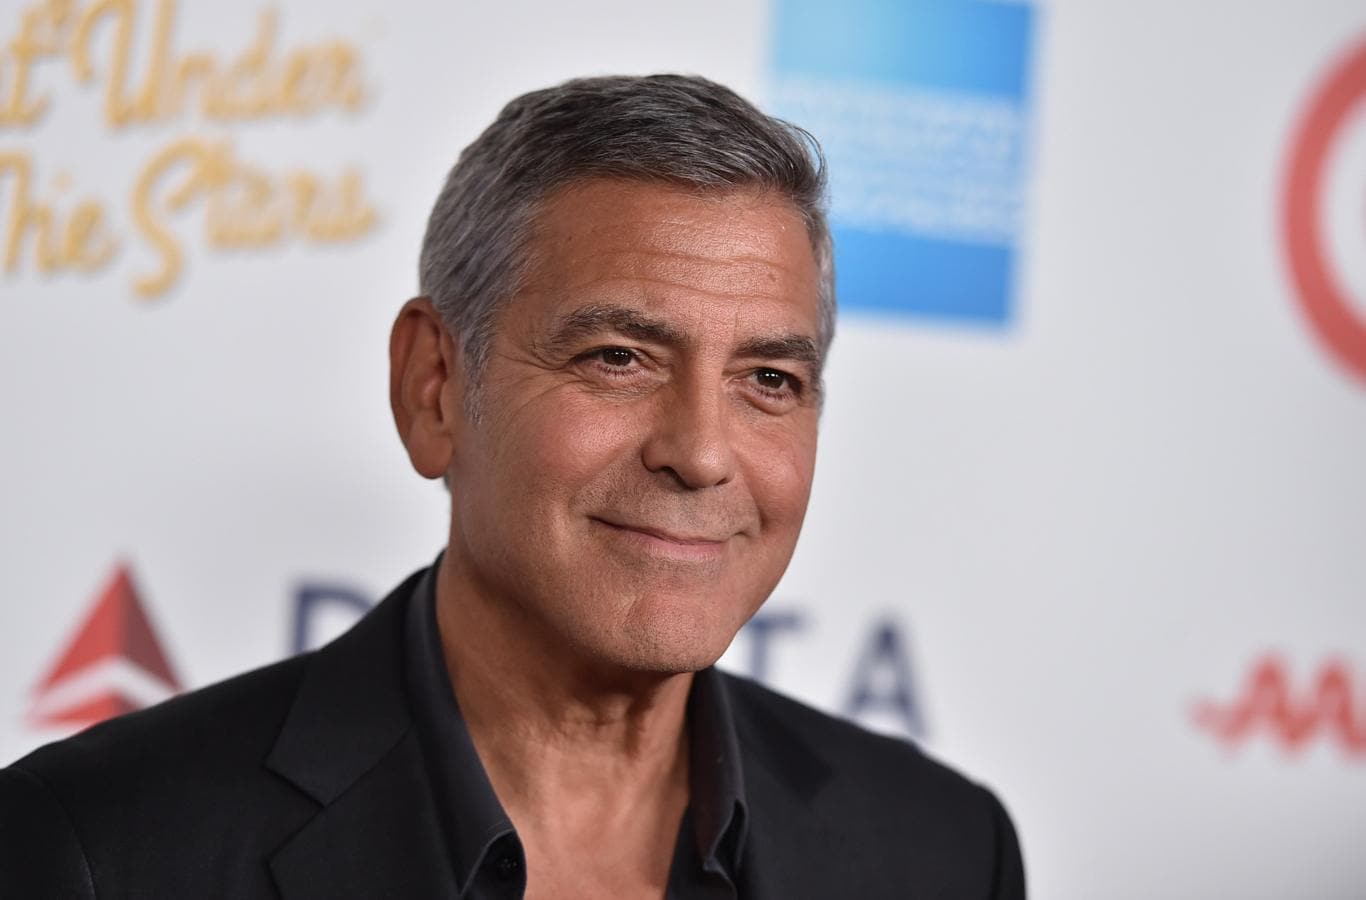 George Clooney. 2006